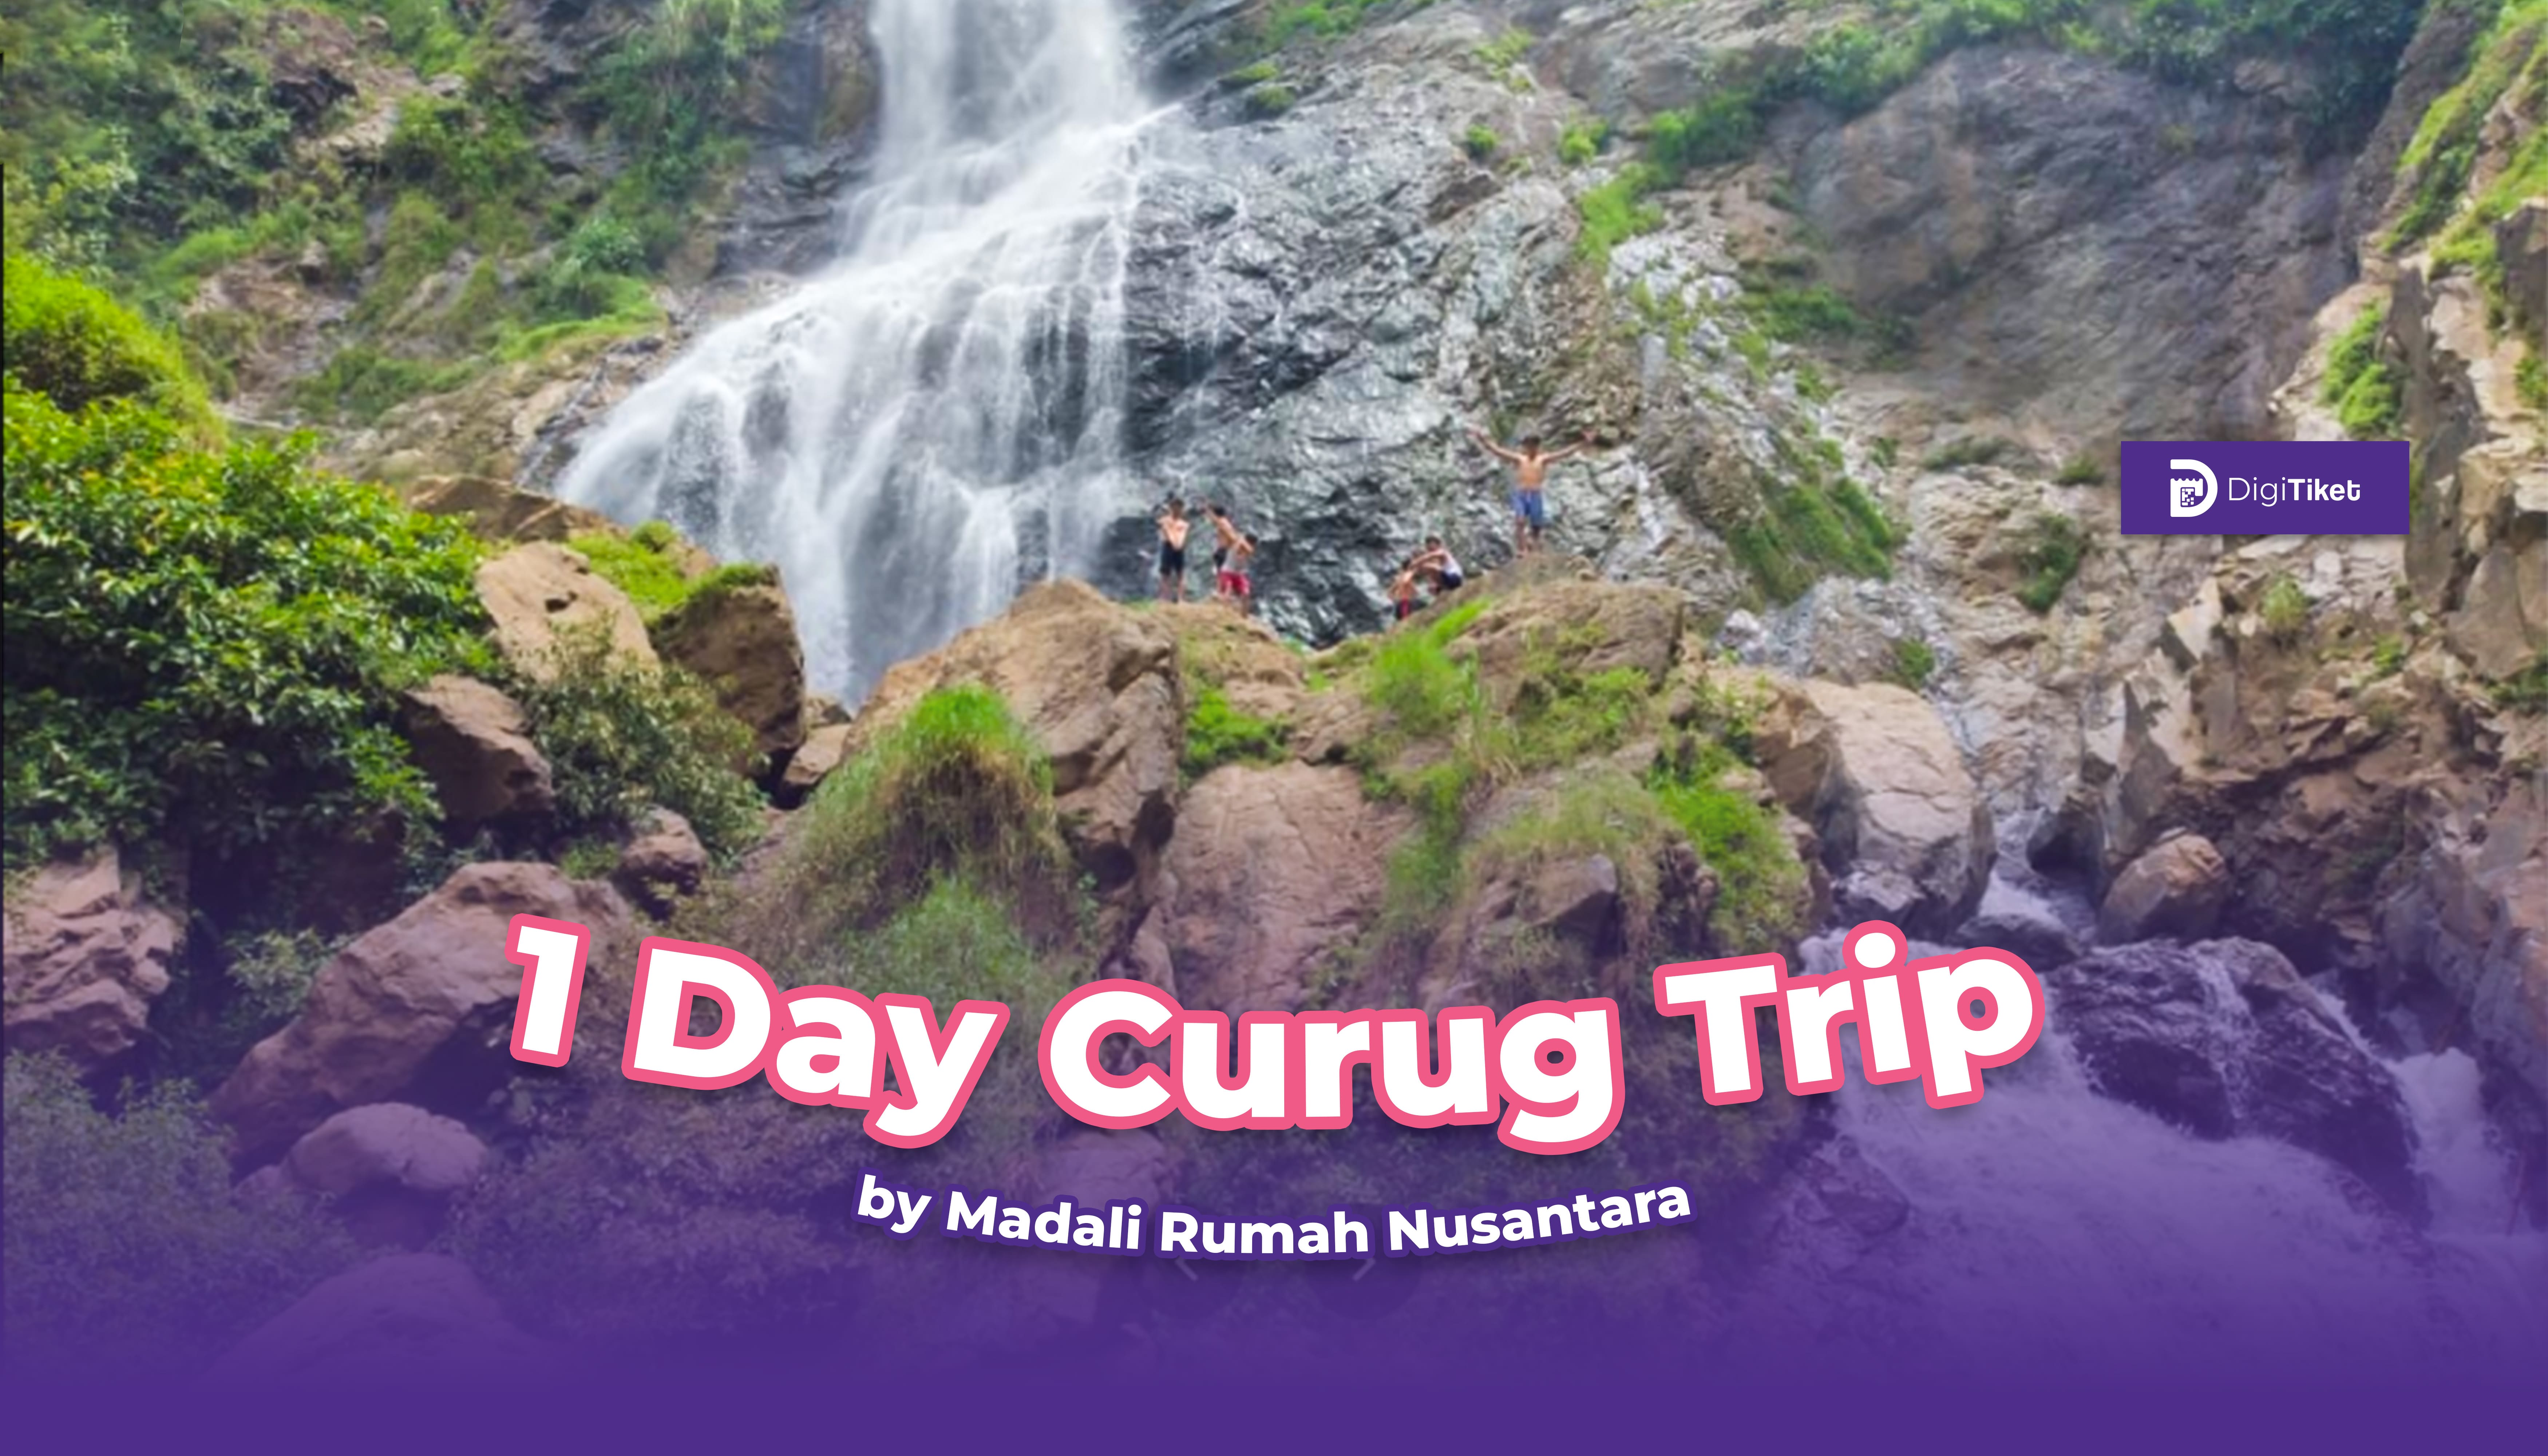 1 Day Curug Trip by Madali Rumah Nusantara